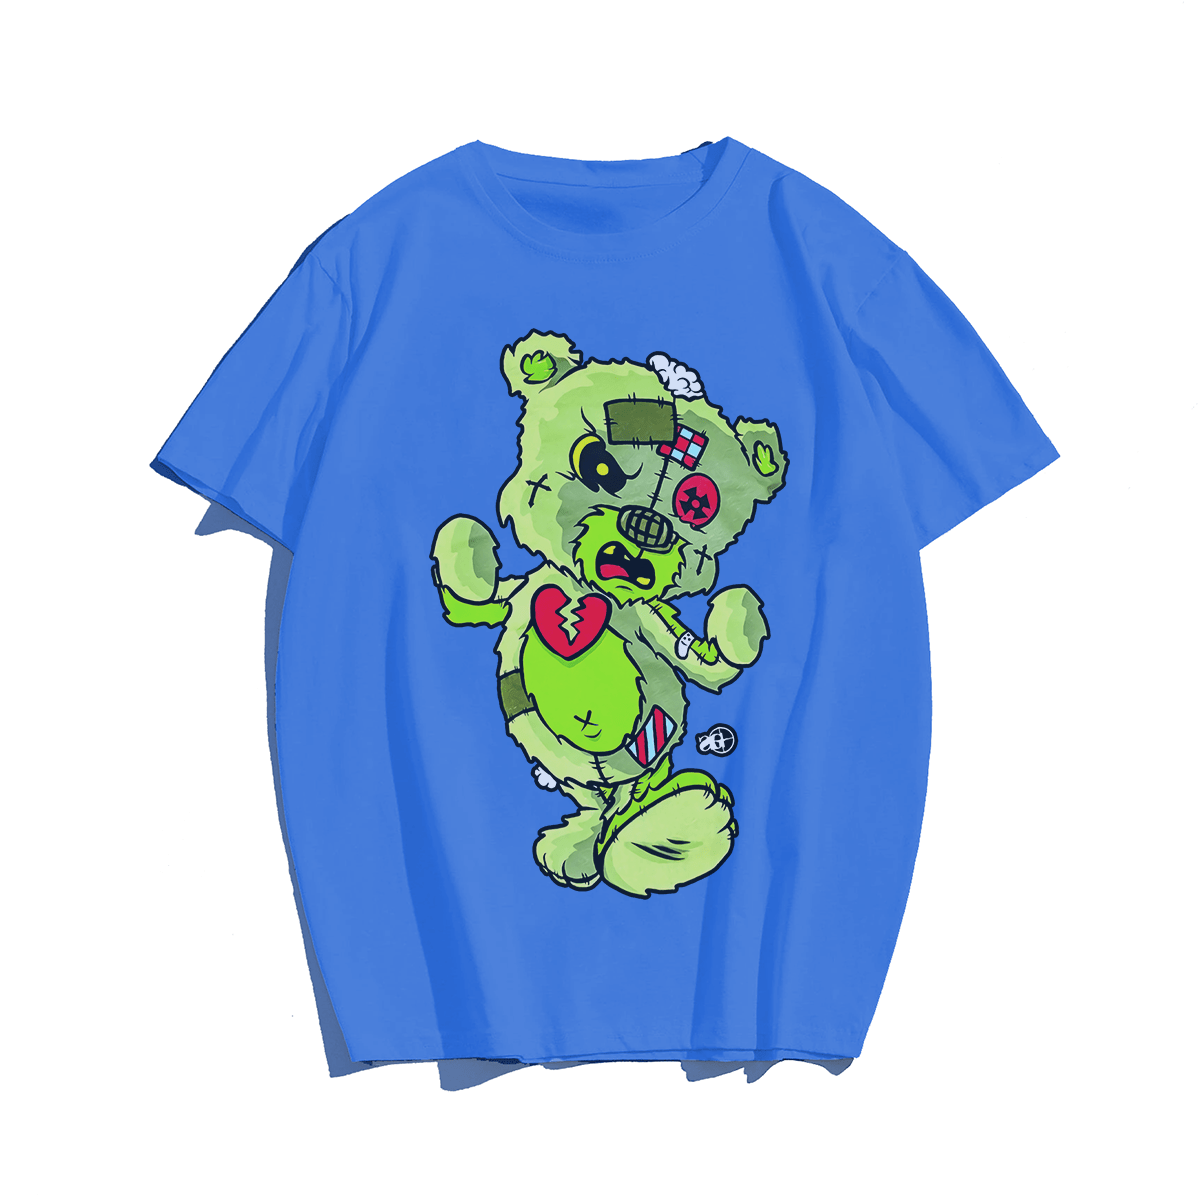 Bear's Heart Broken, Creative Men Plus Size Oversize T-shirt for Big & Tall Man